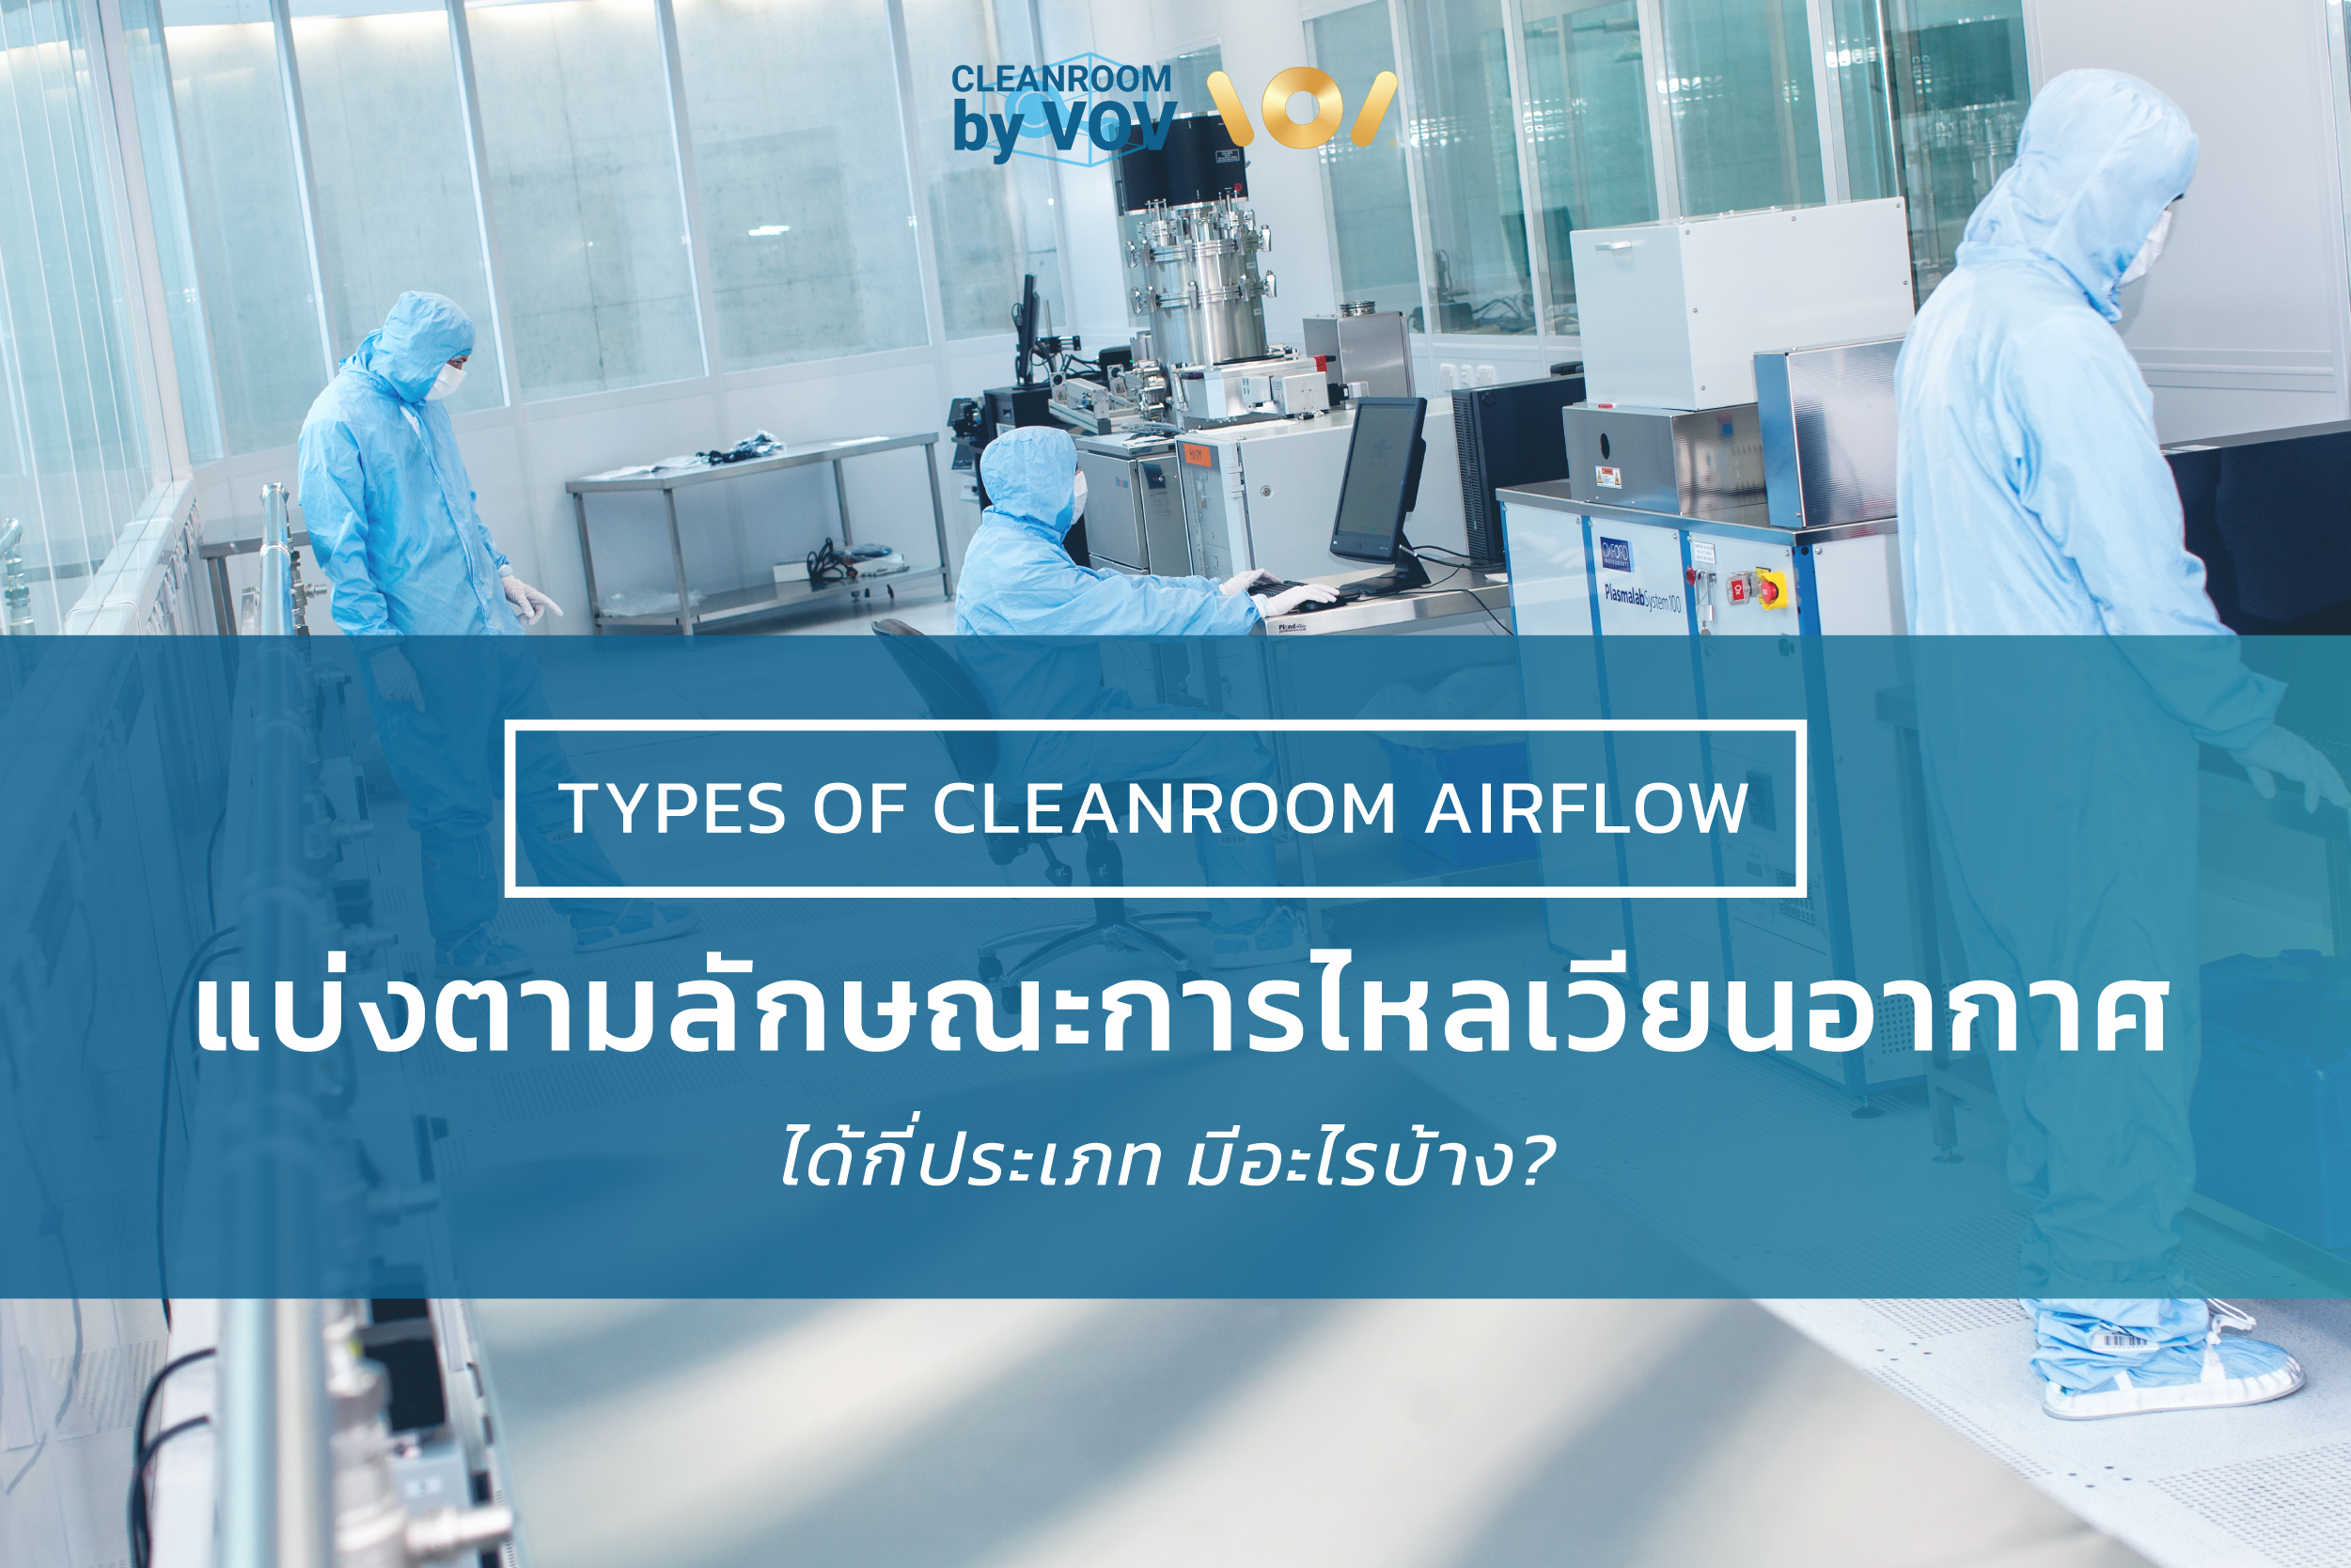 ประเภทของห้องคลีนรูม (Cleanroom) ตามลักษณะการไหลเวียนของอากาศ